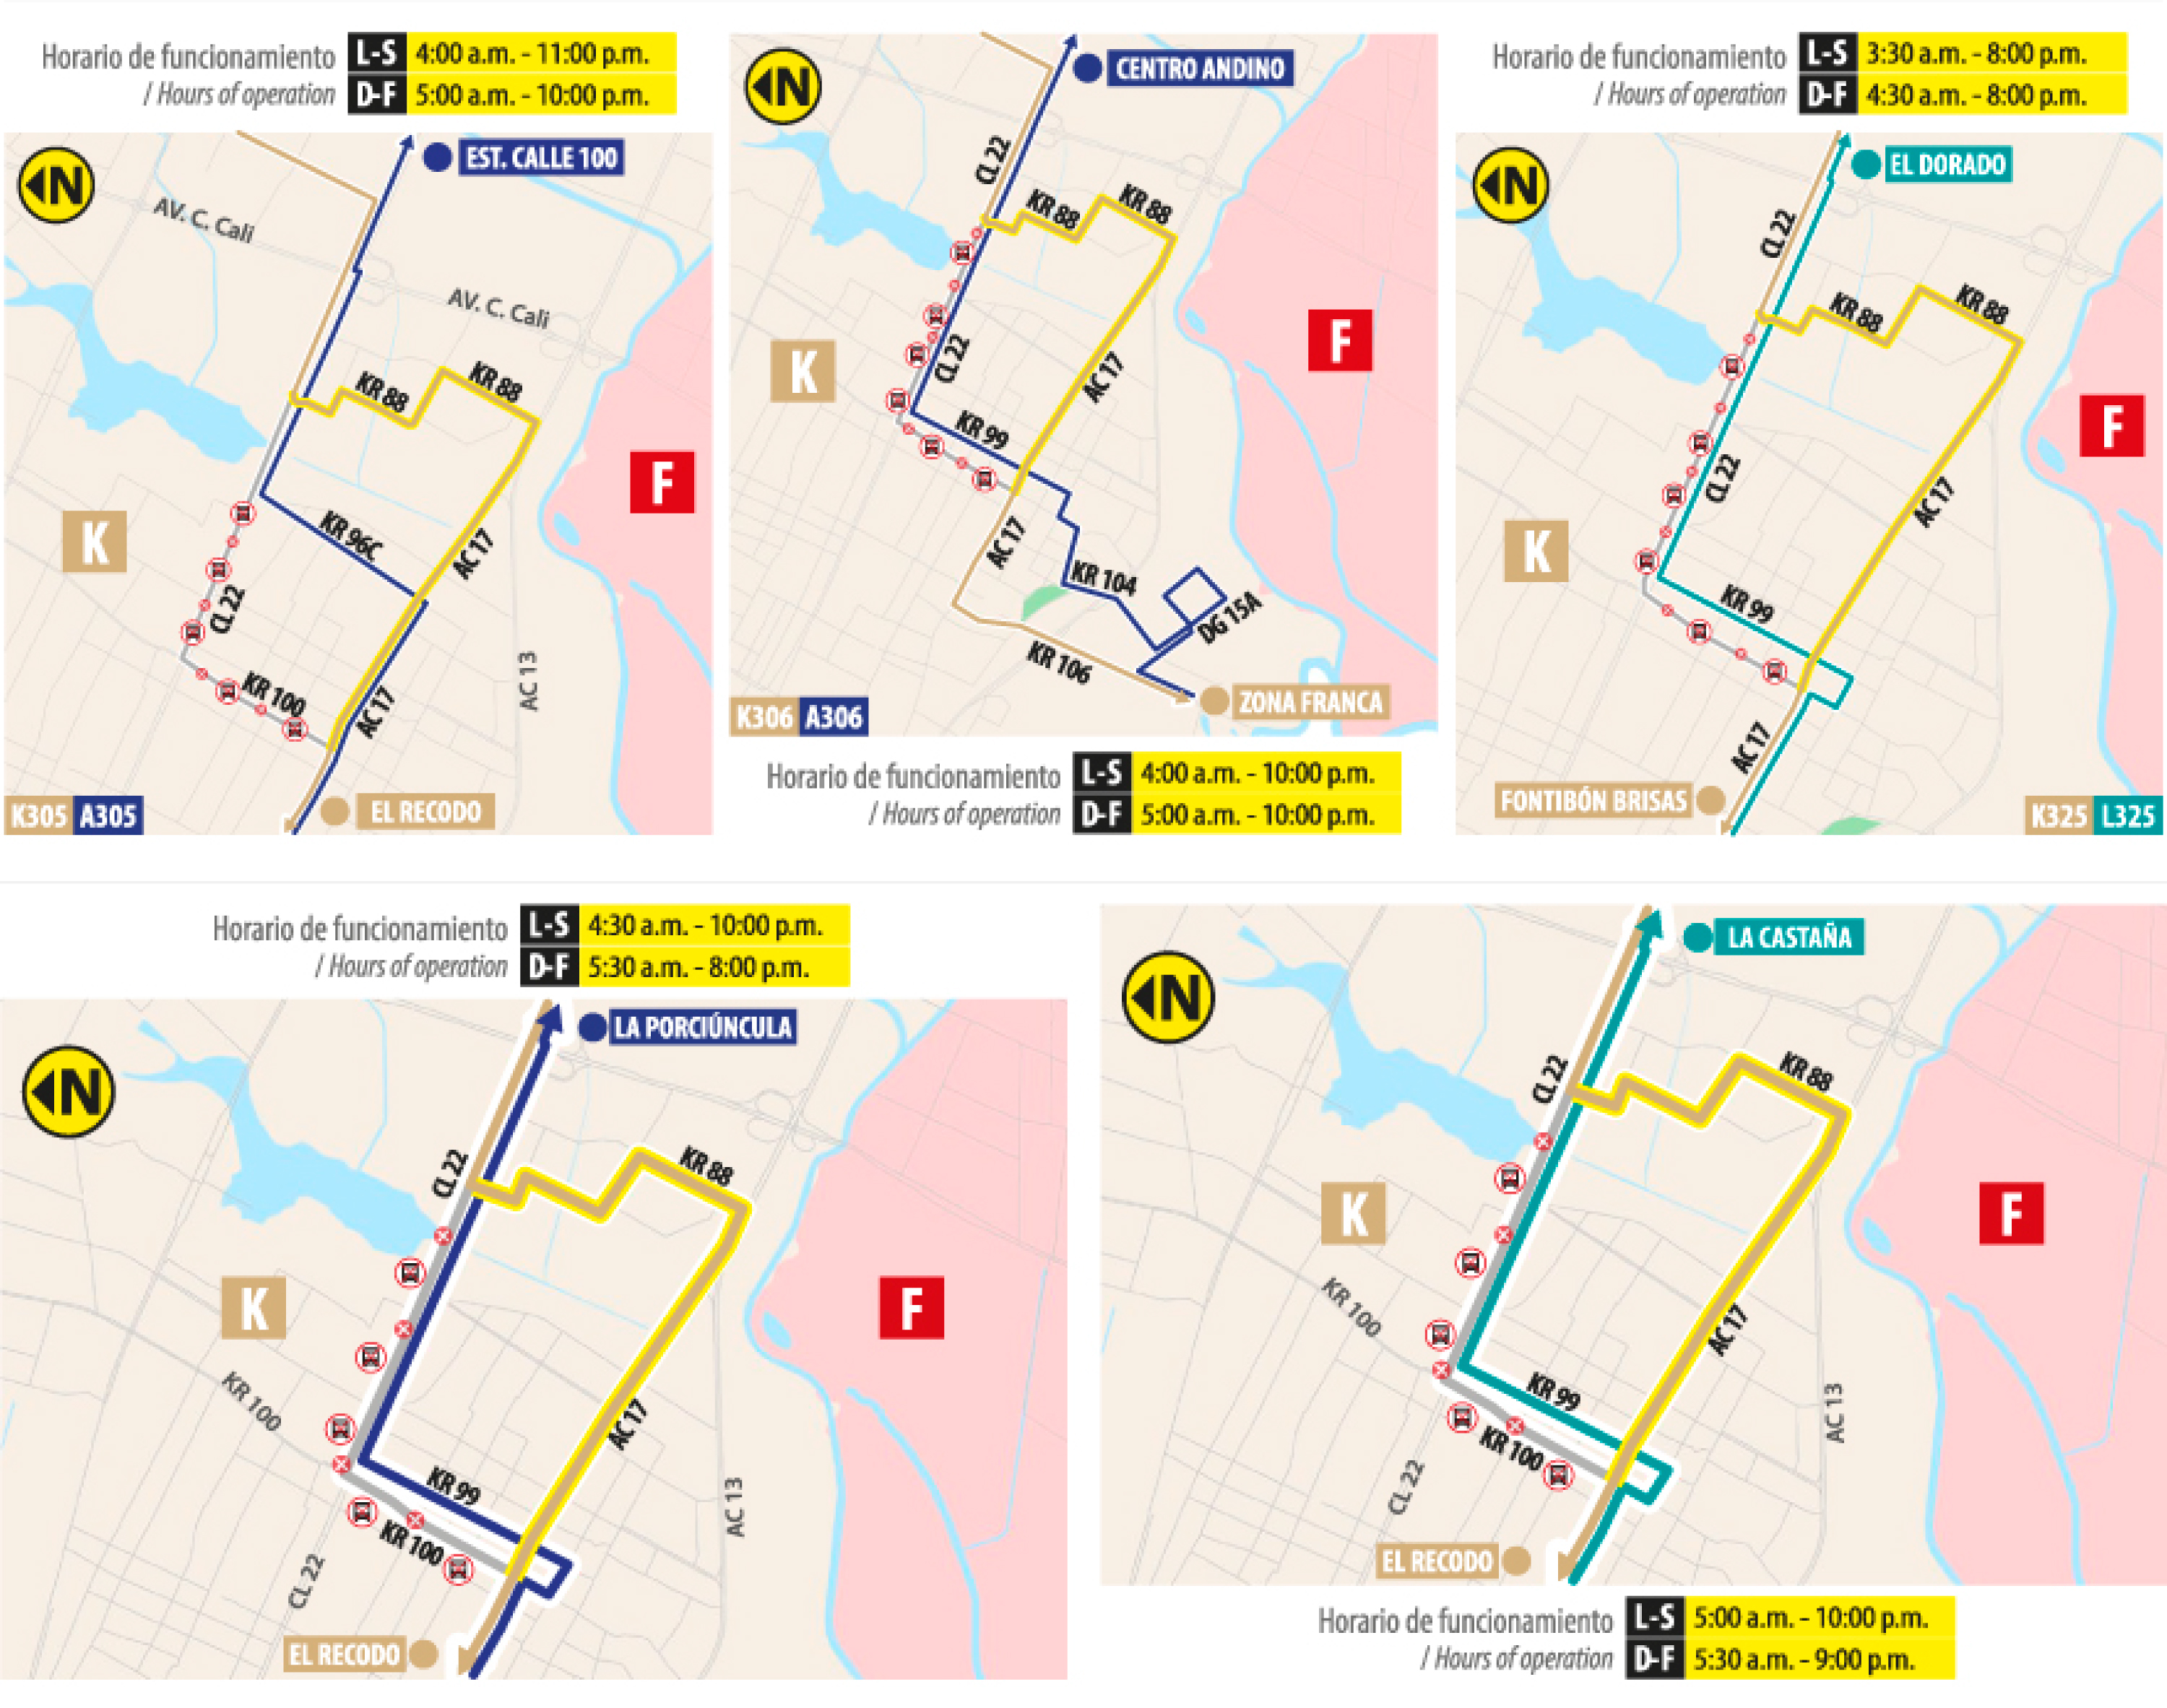 servicios zonales K305 - A305, K306 - A306, K325- L325, K322 - A322 y K307 - L307 dejarán de transitar por la carrera 100 y calle 22